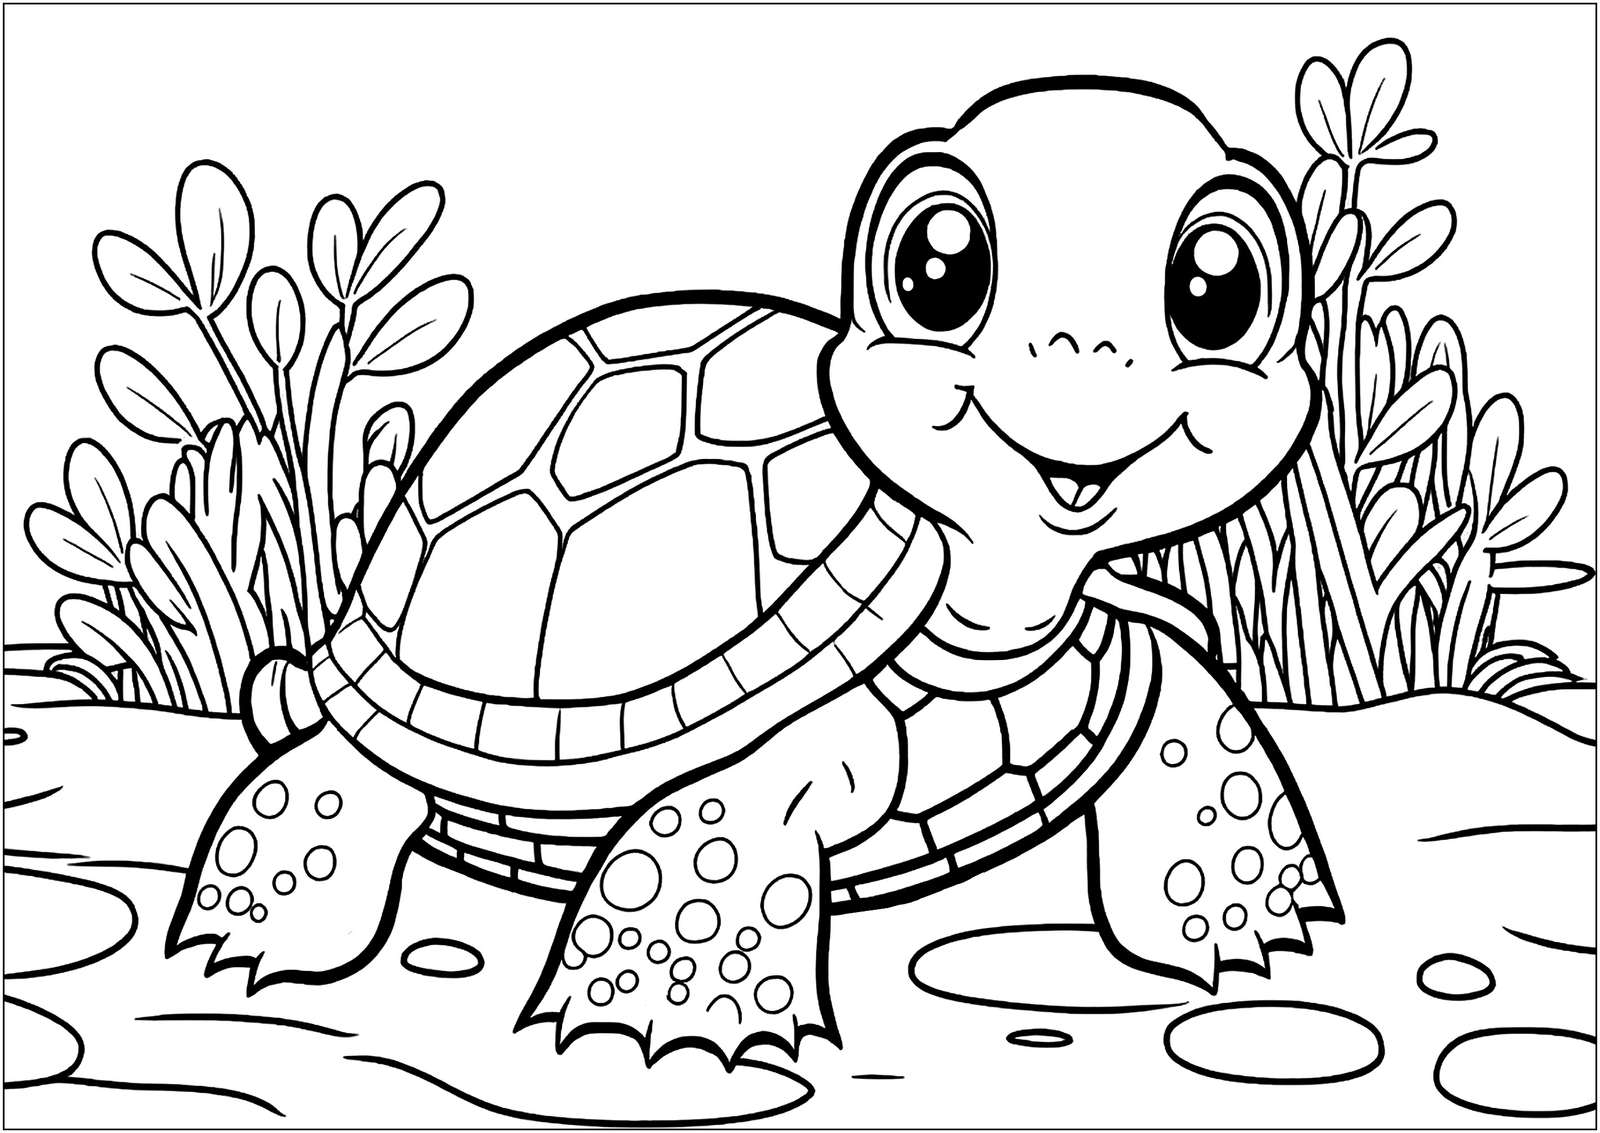 черепахи пазл онлайн